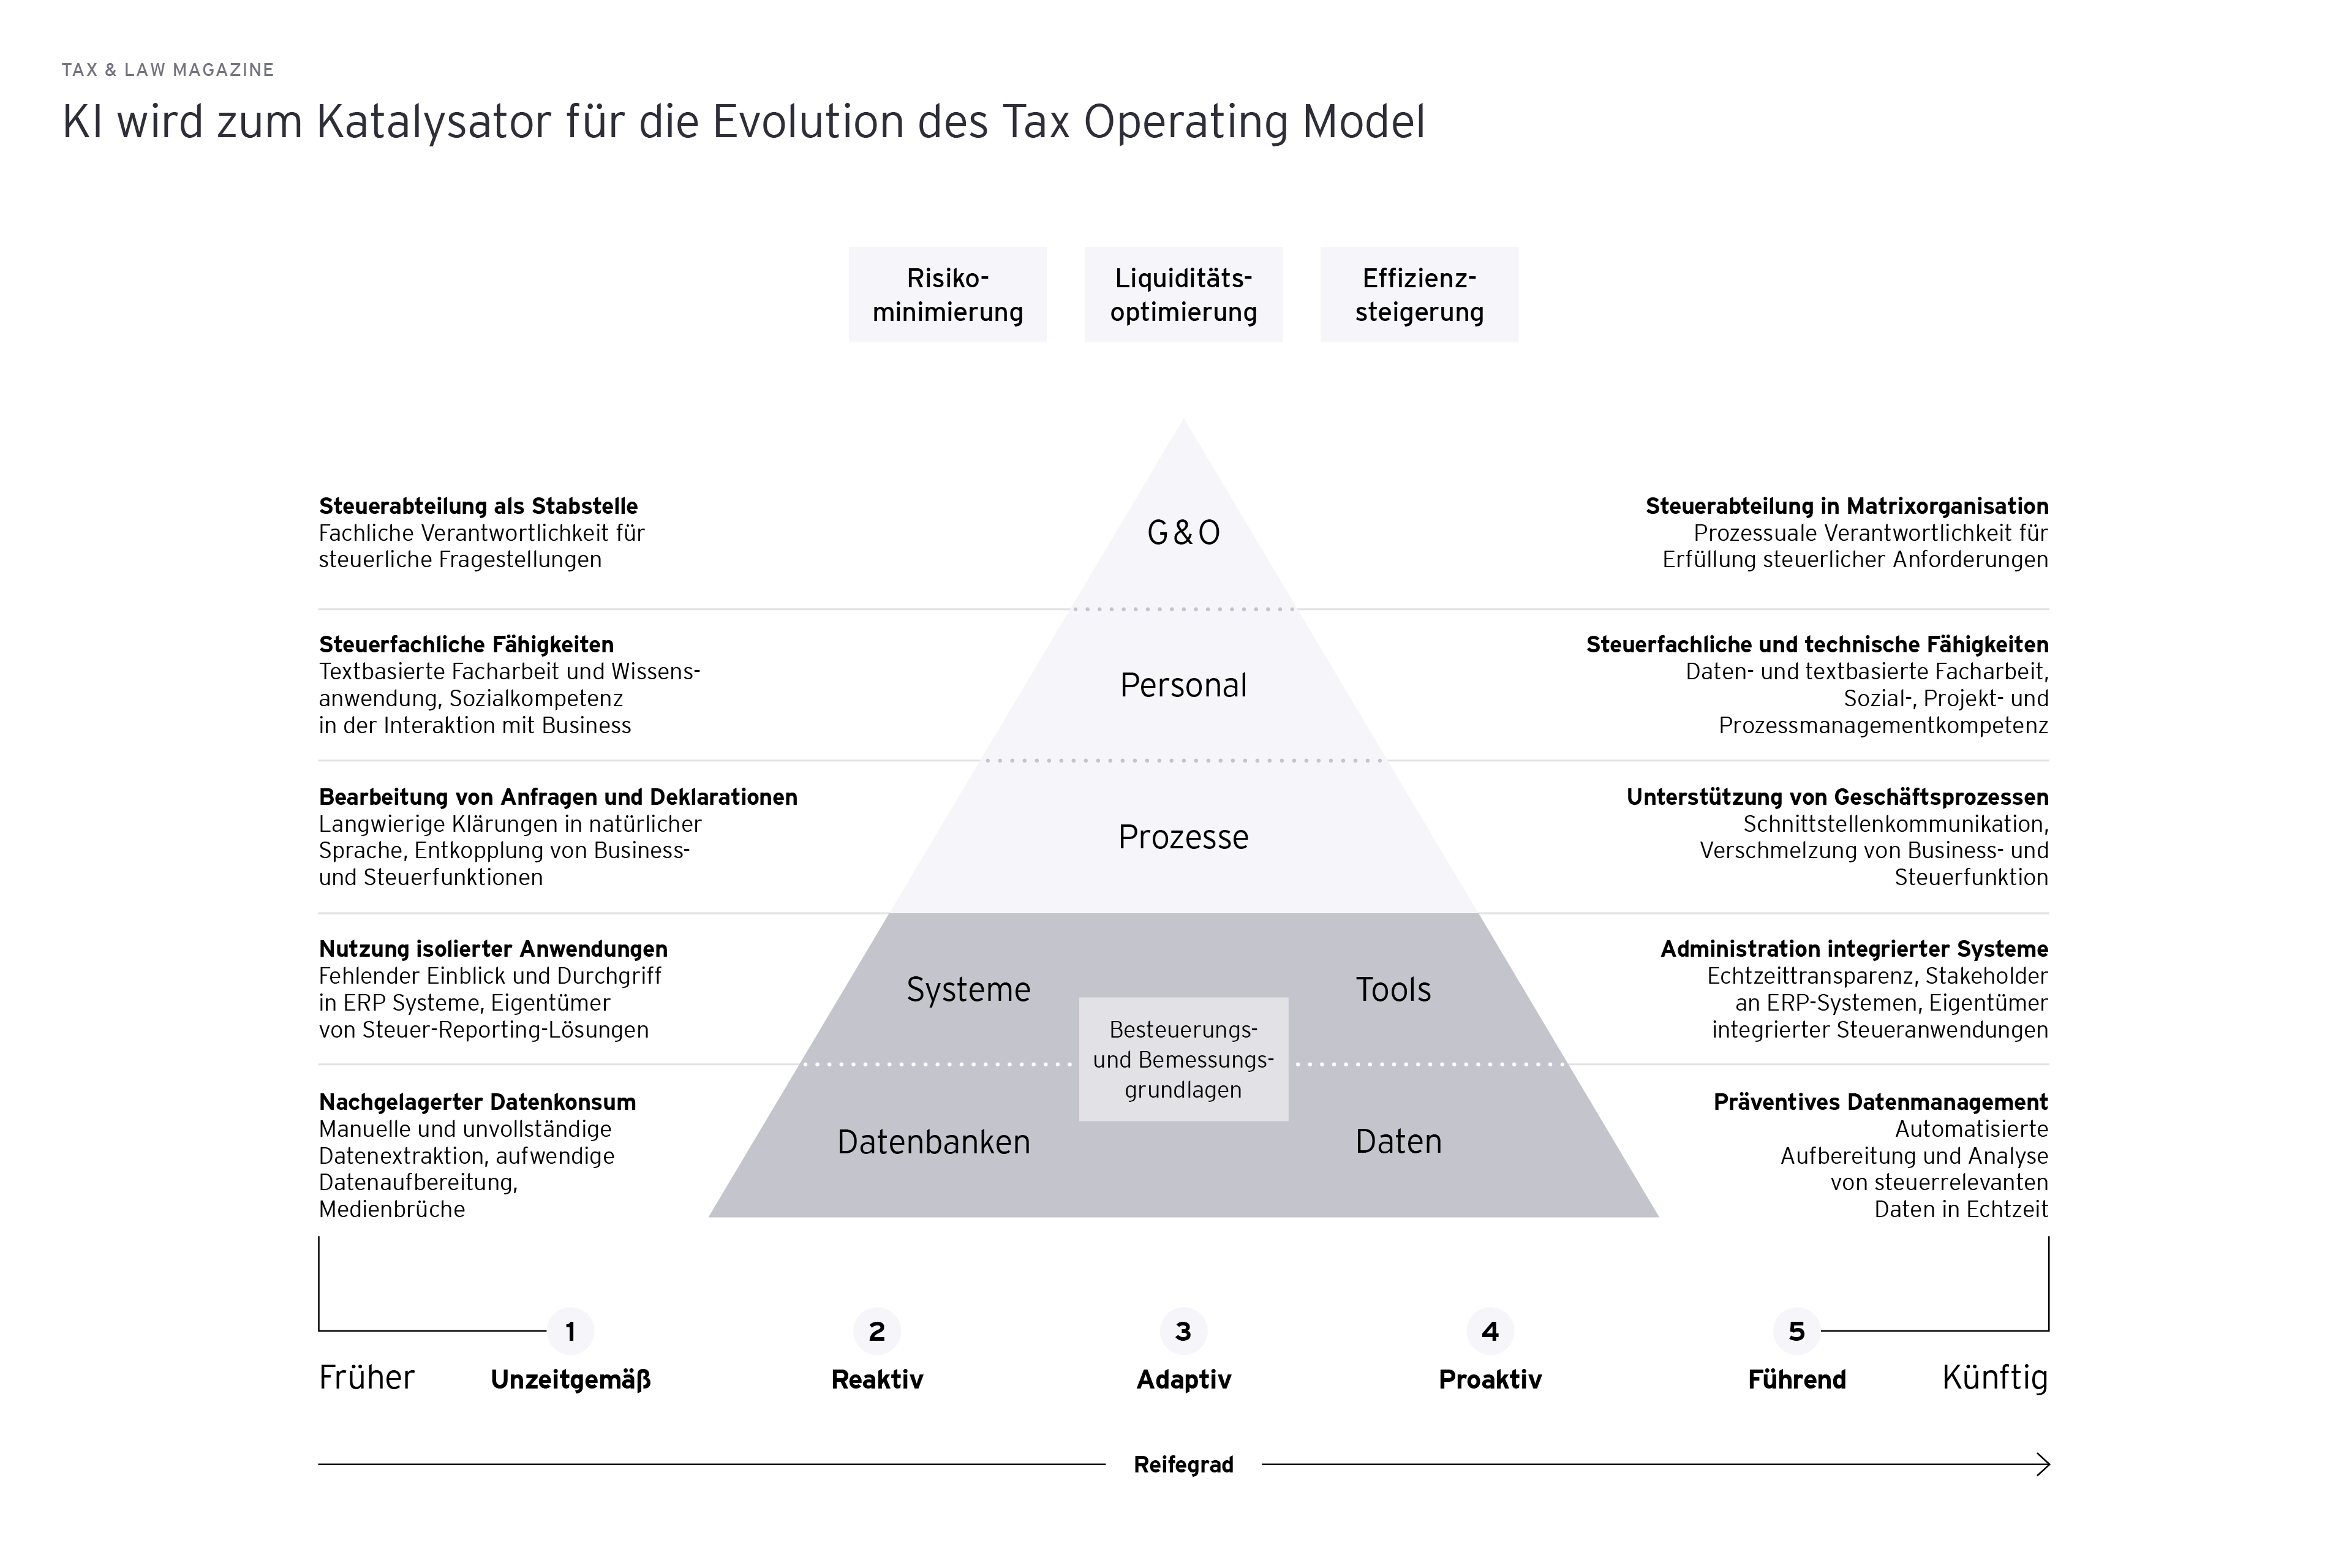 Reifegradmodell: KI wird zum Katalysator für die Evolution des Tax Operating Model